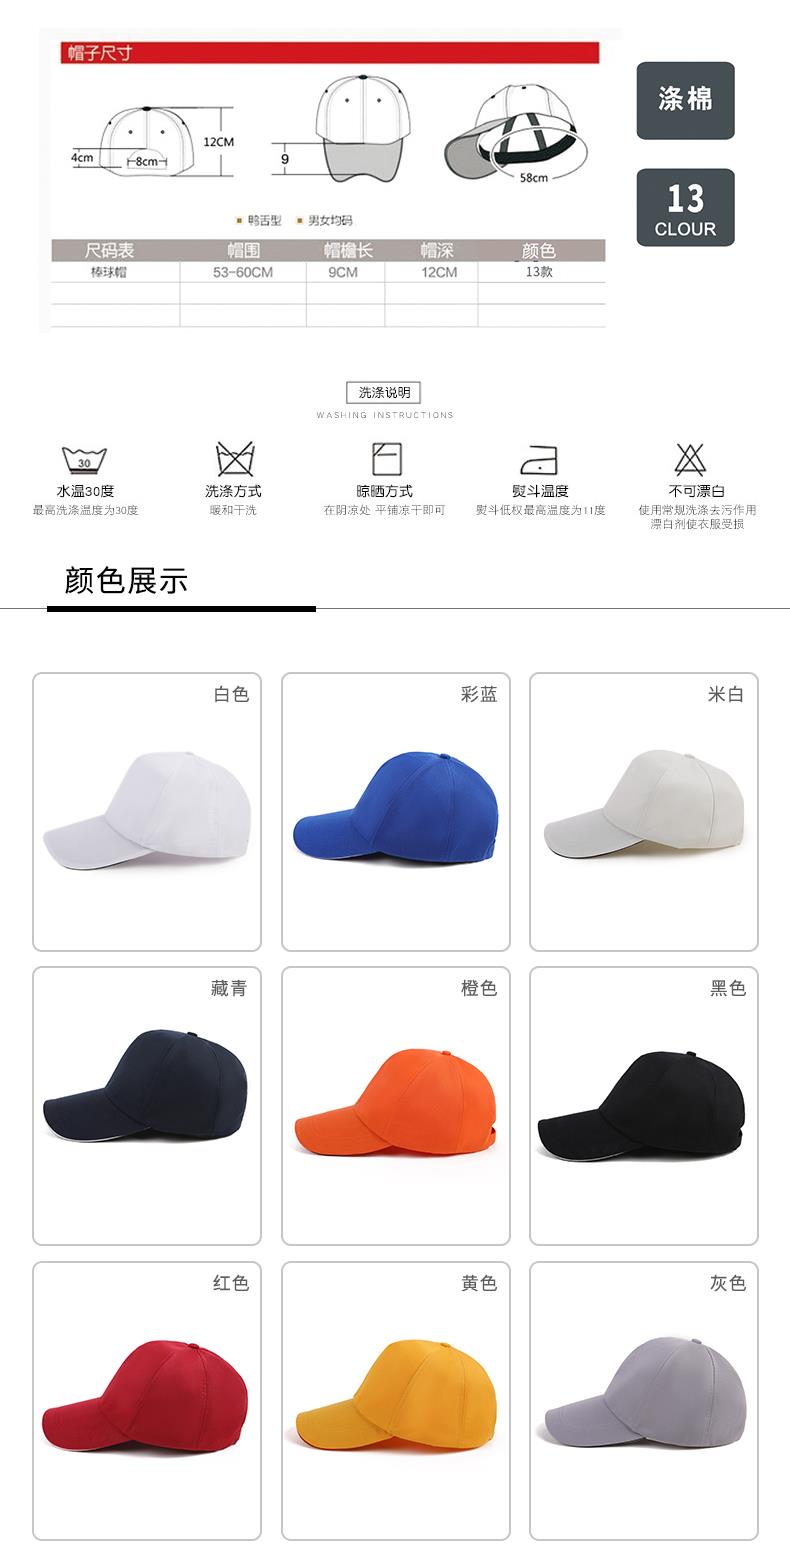 西安帽子品牌